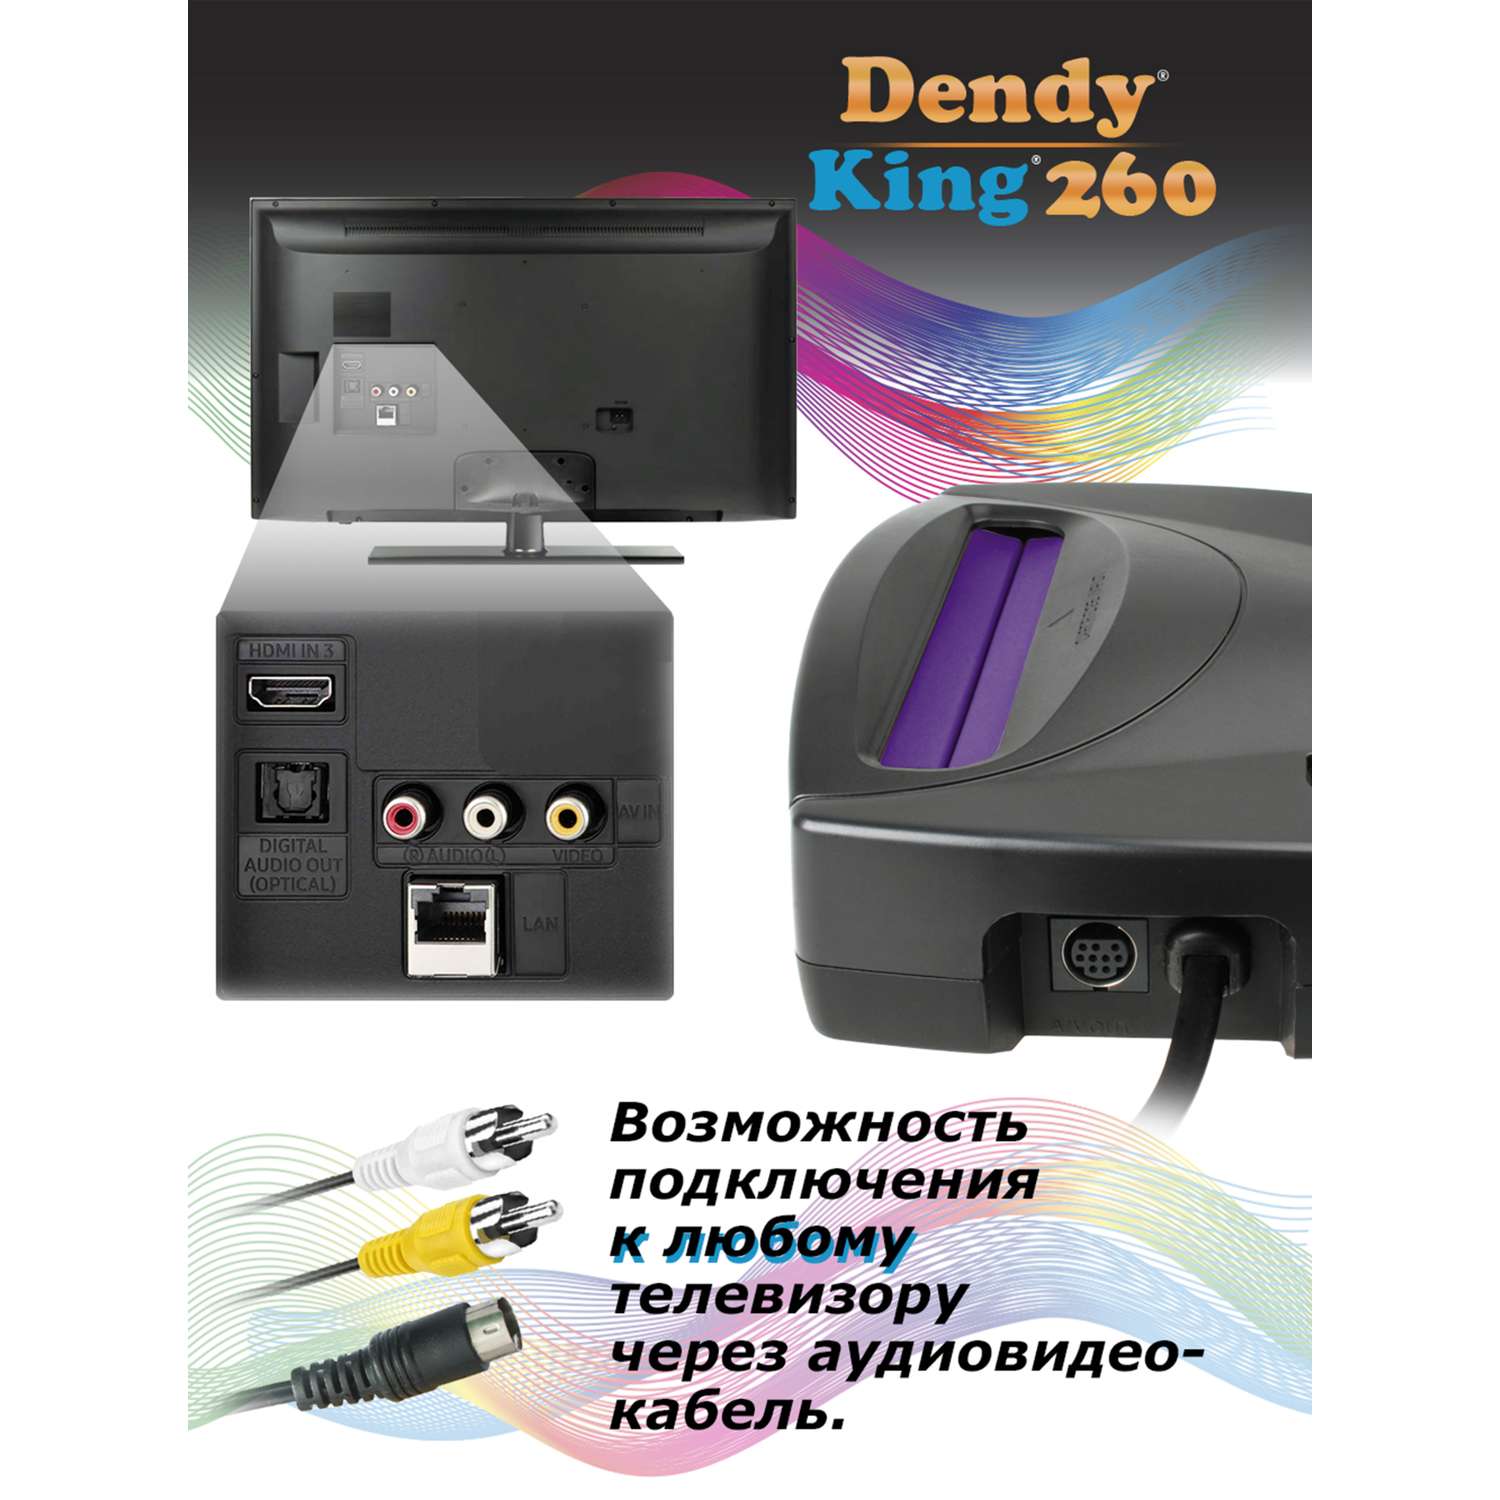 Игровая приставка Dendy King 260 игр (8-бит) со световым пистолетом - фото 7